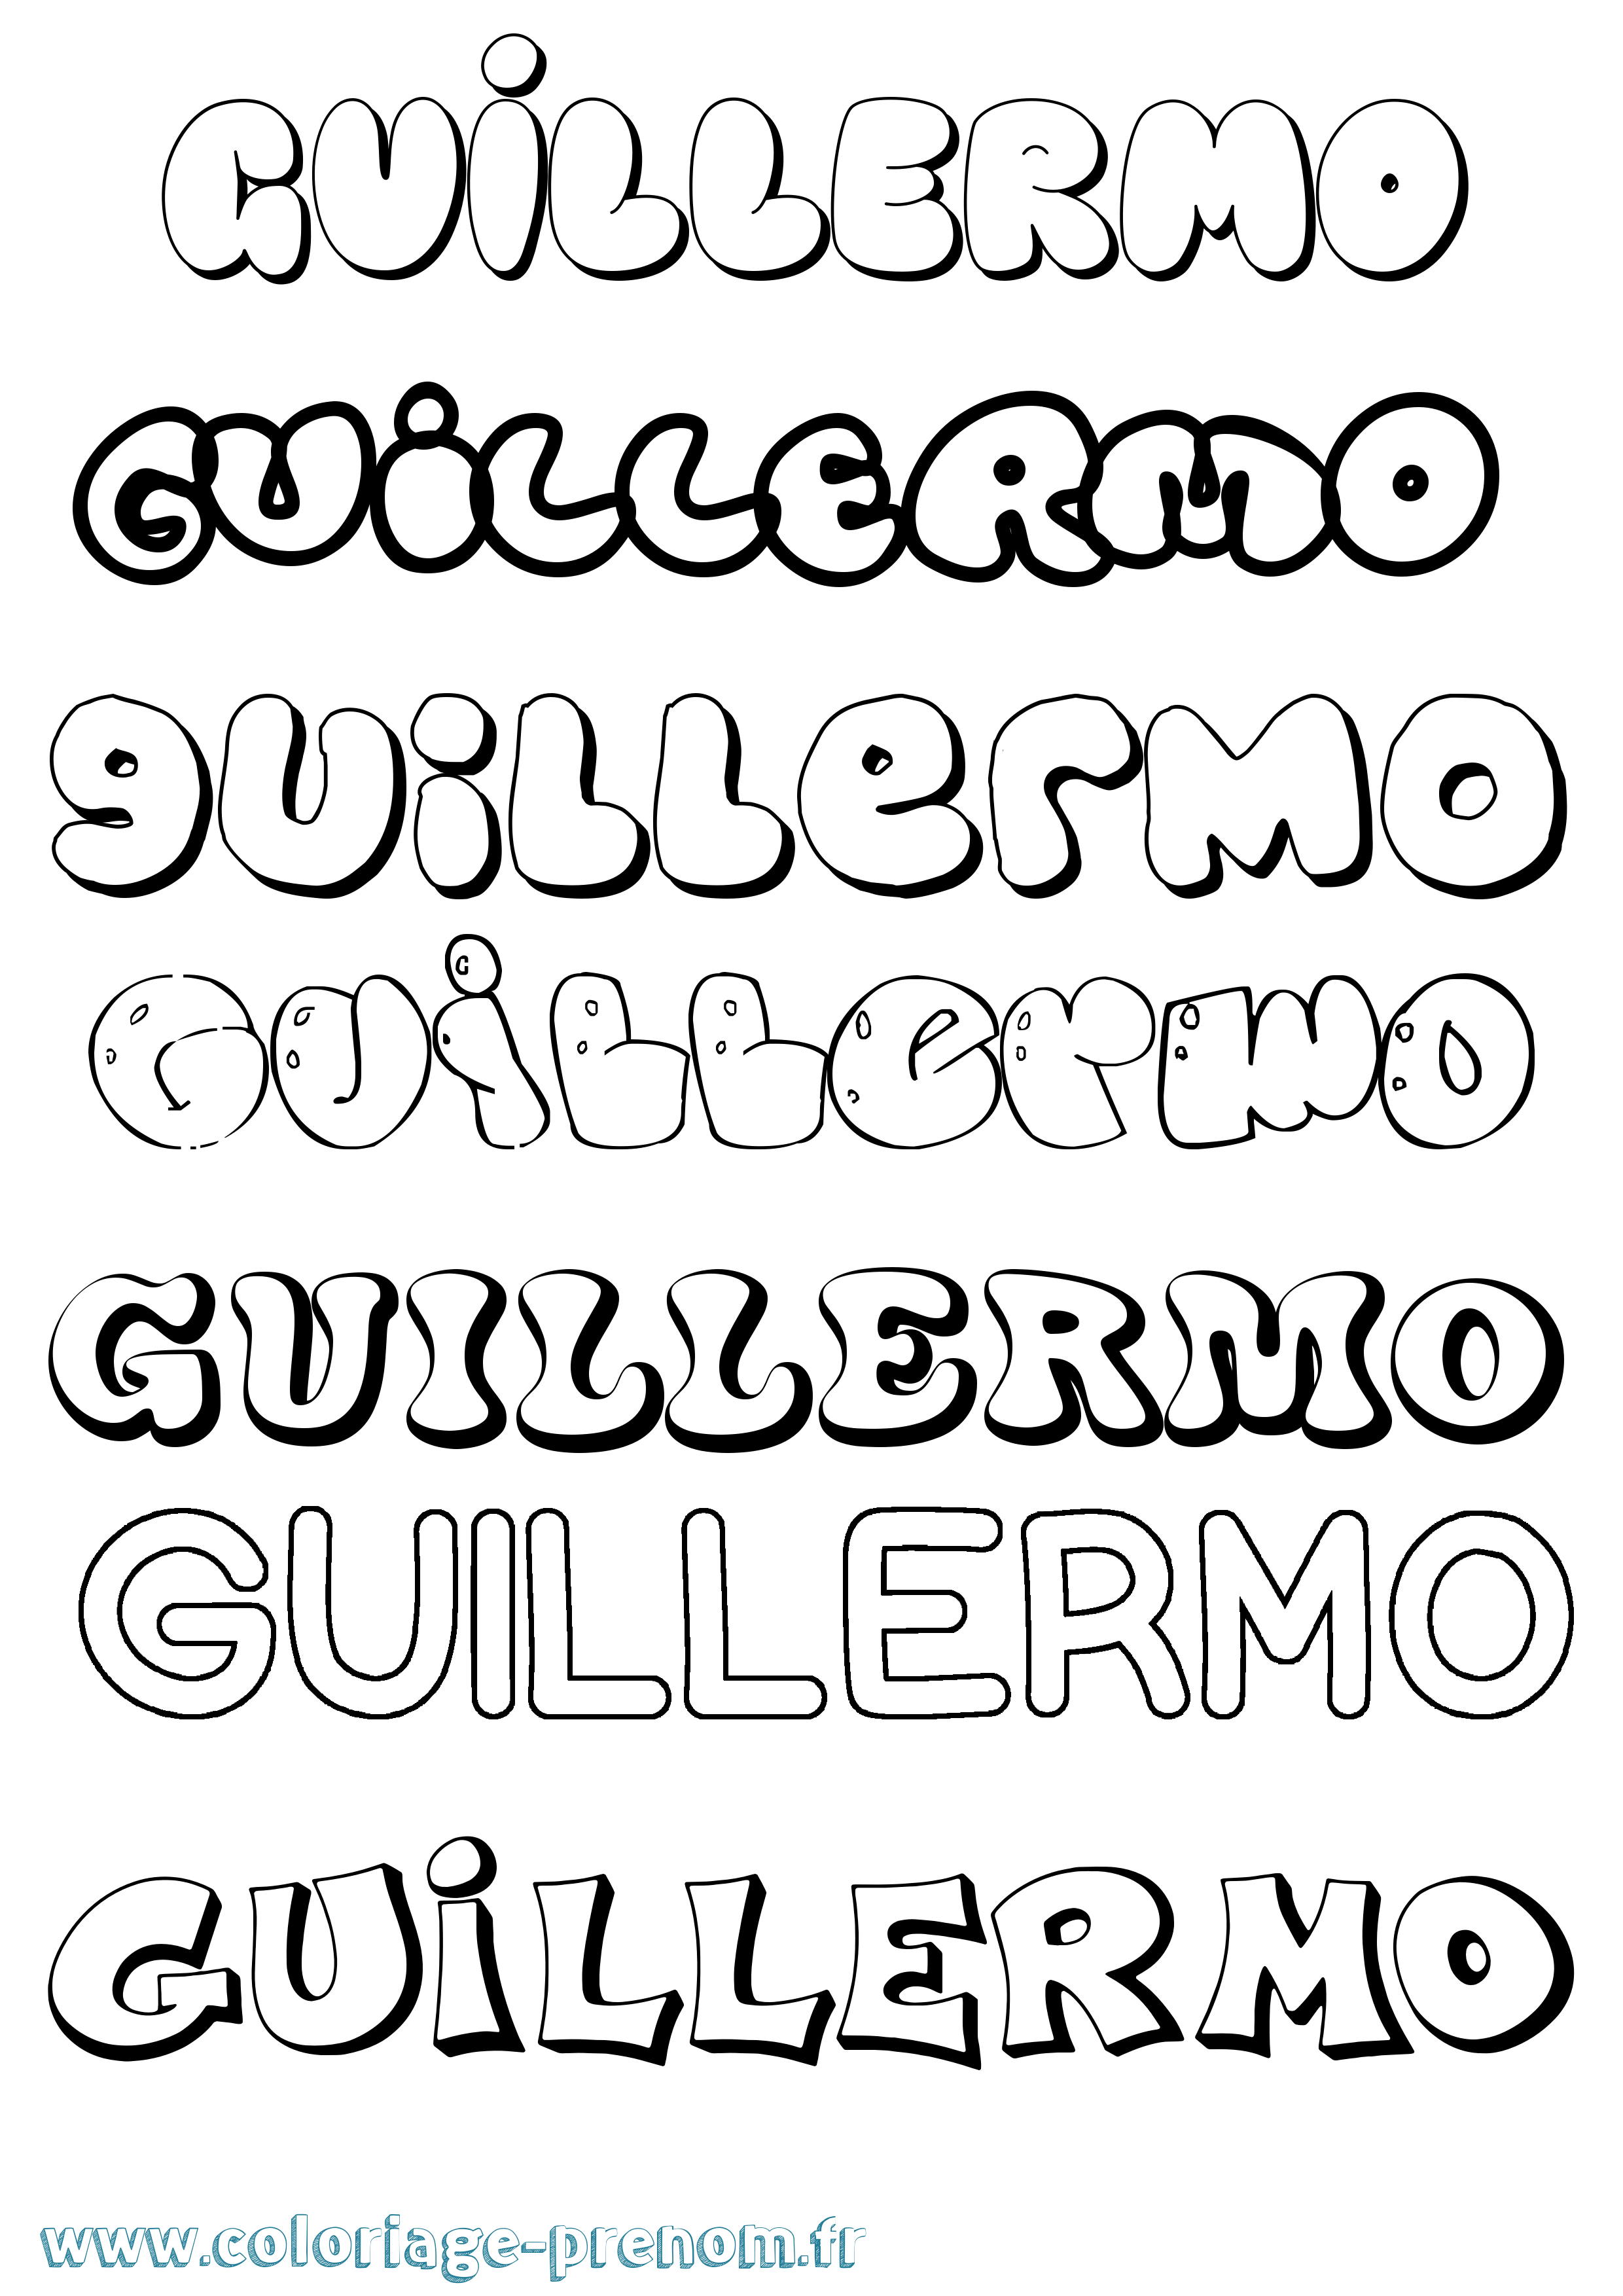 Coloriage prénom Guillermo Bubble